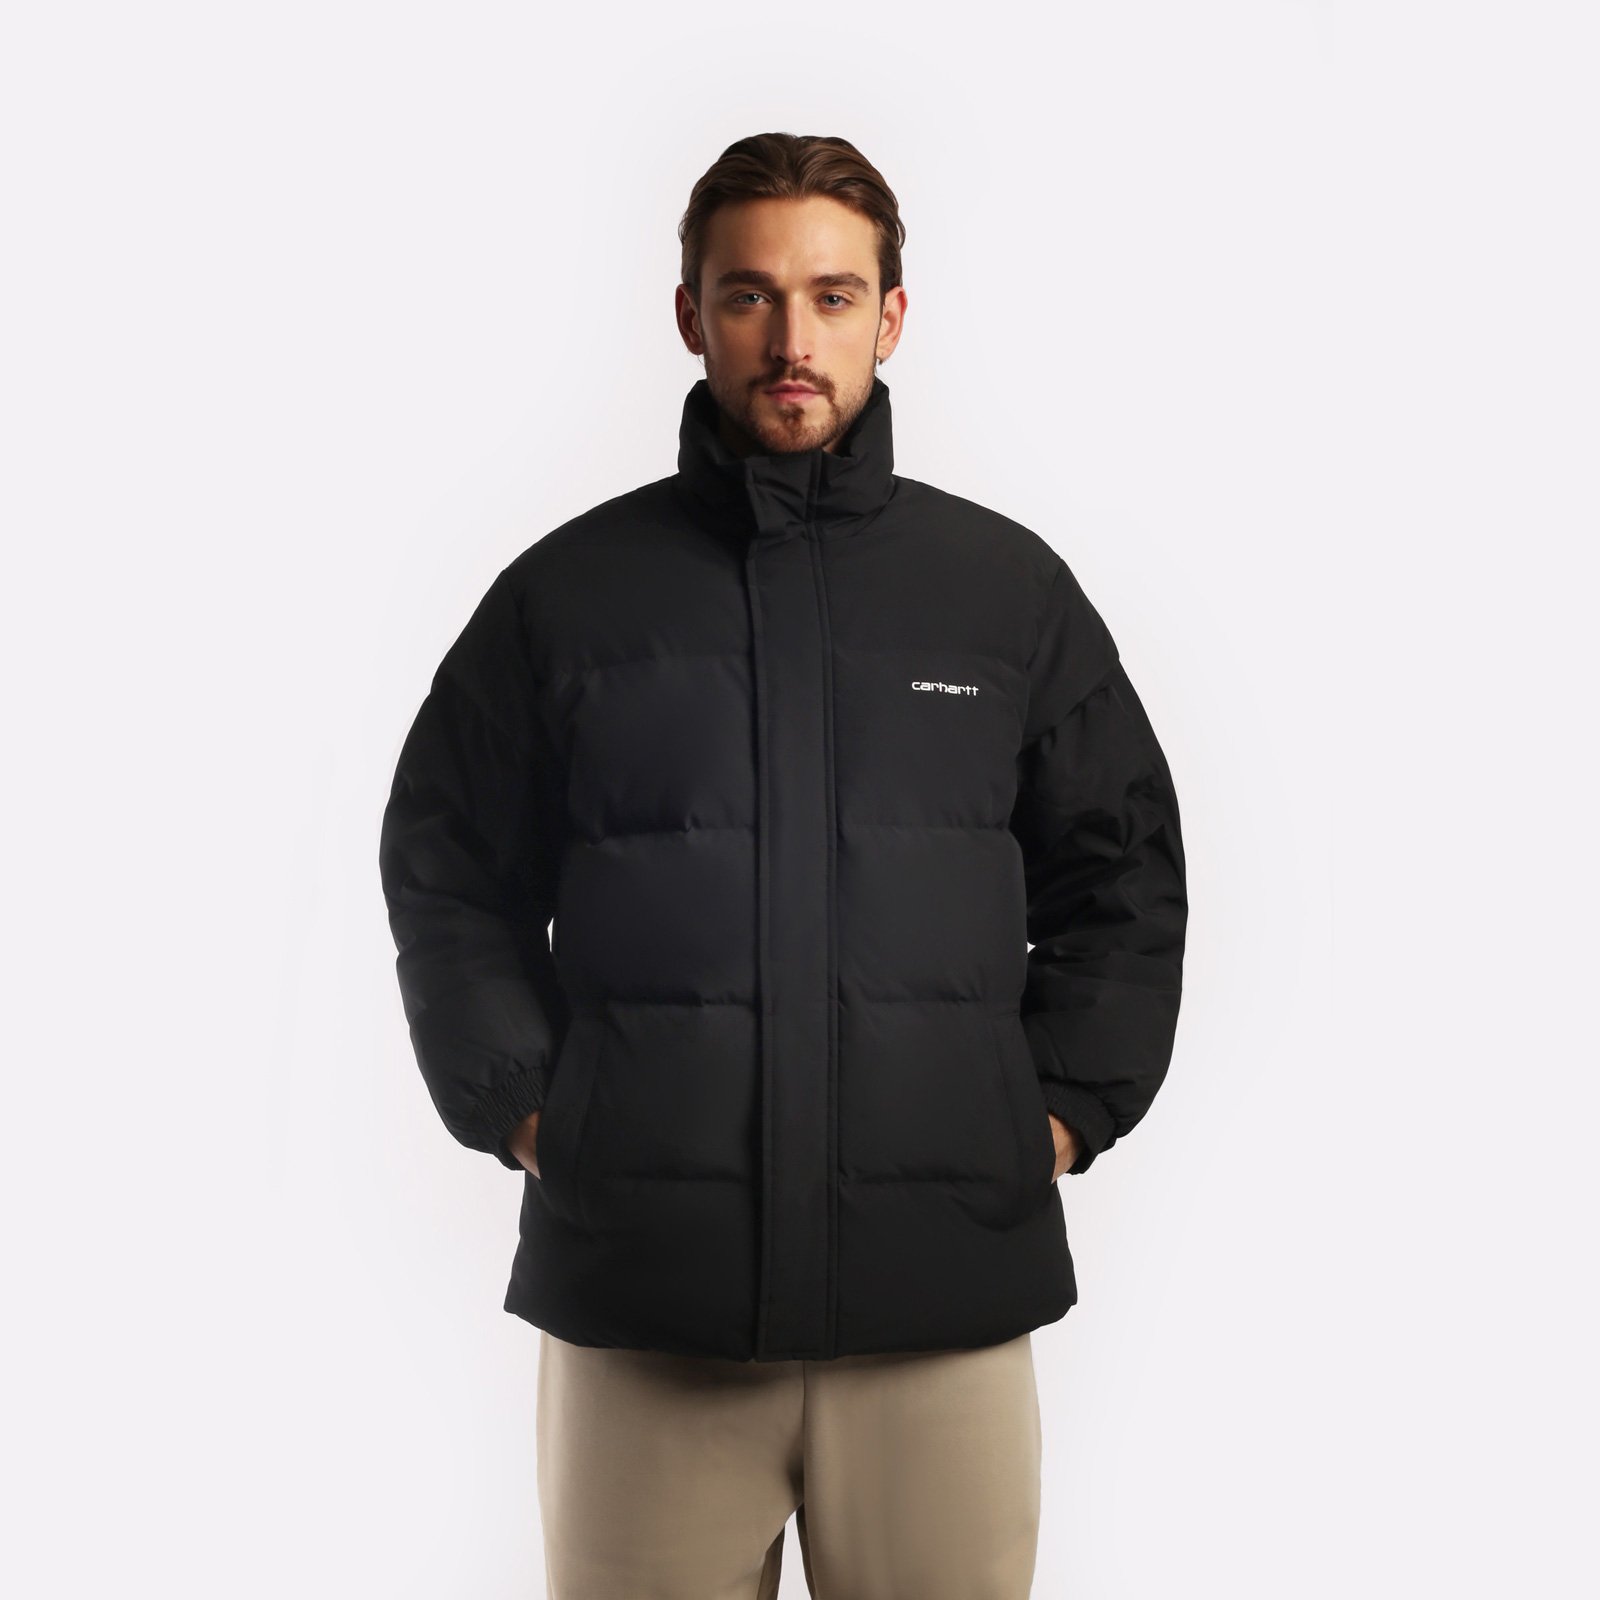 мужская куртка Carhartt WIP Danville Jacket  (I029450-black/wht)  - цена, описание, фото 1